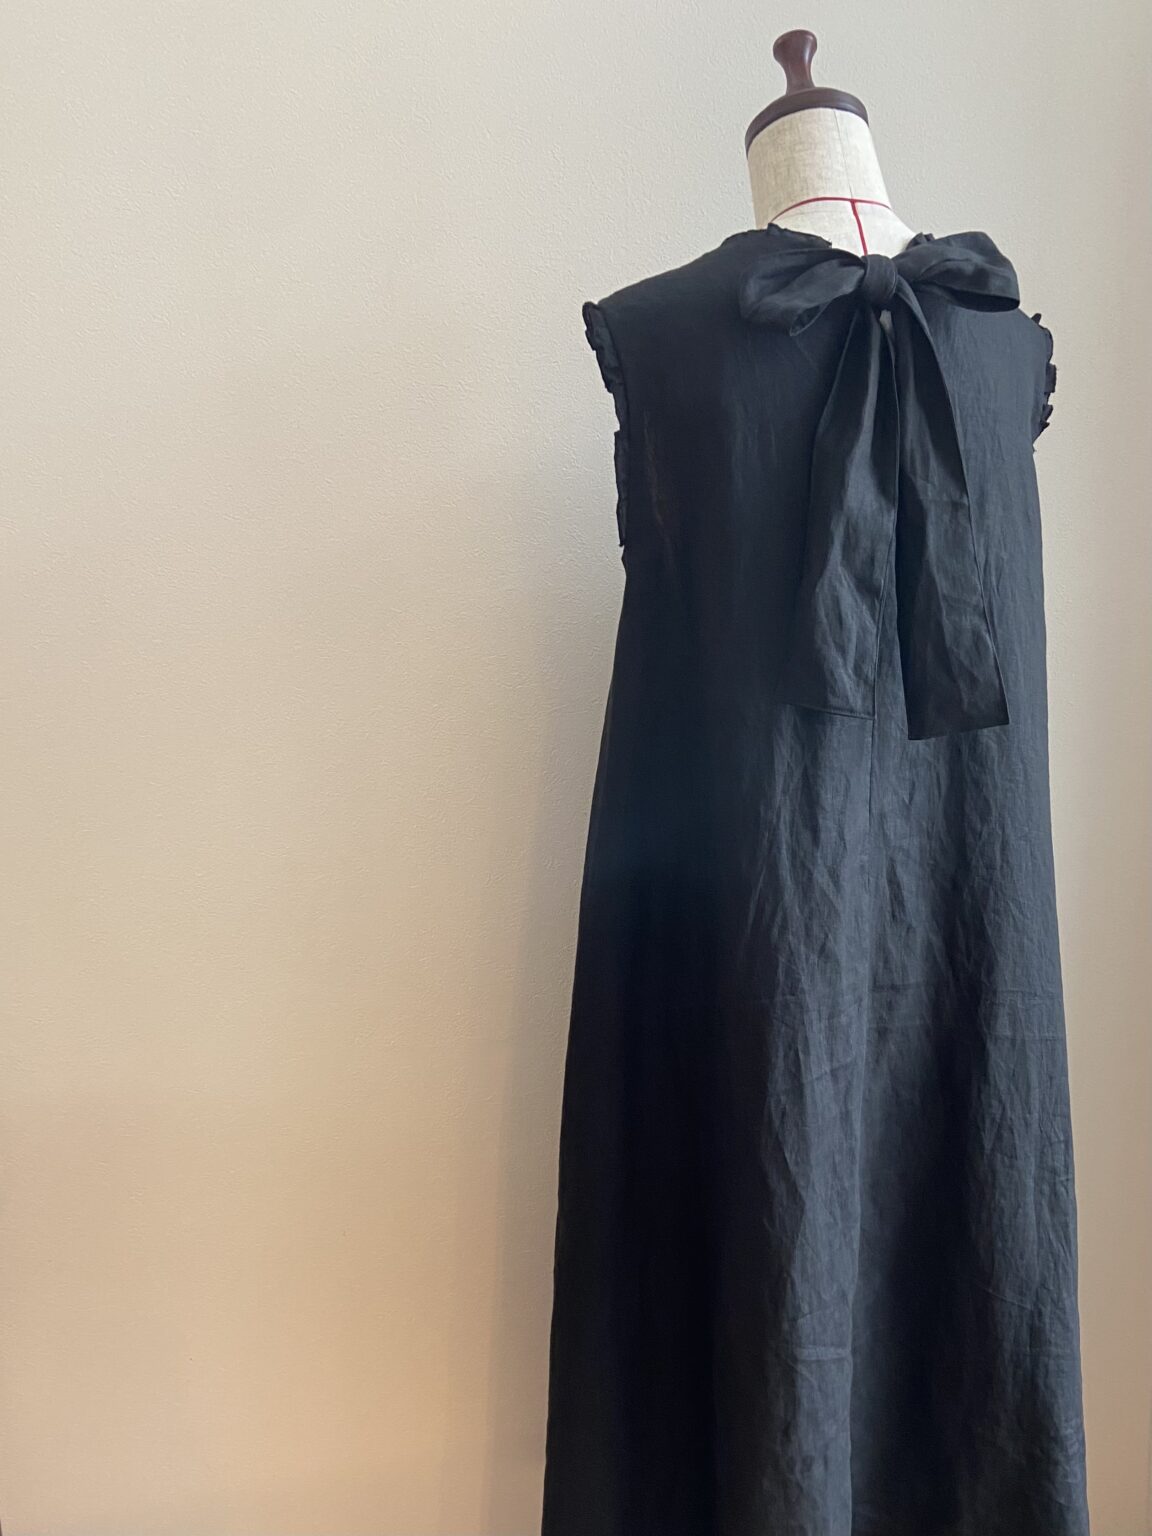 きれいめリネンのロングドレス作りました。【ミセスのスタイルブック2020年盛夏号】 - Dressmaking Days